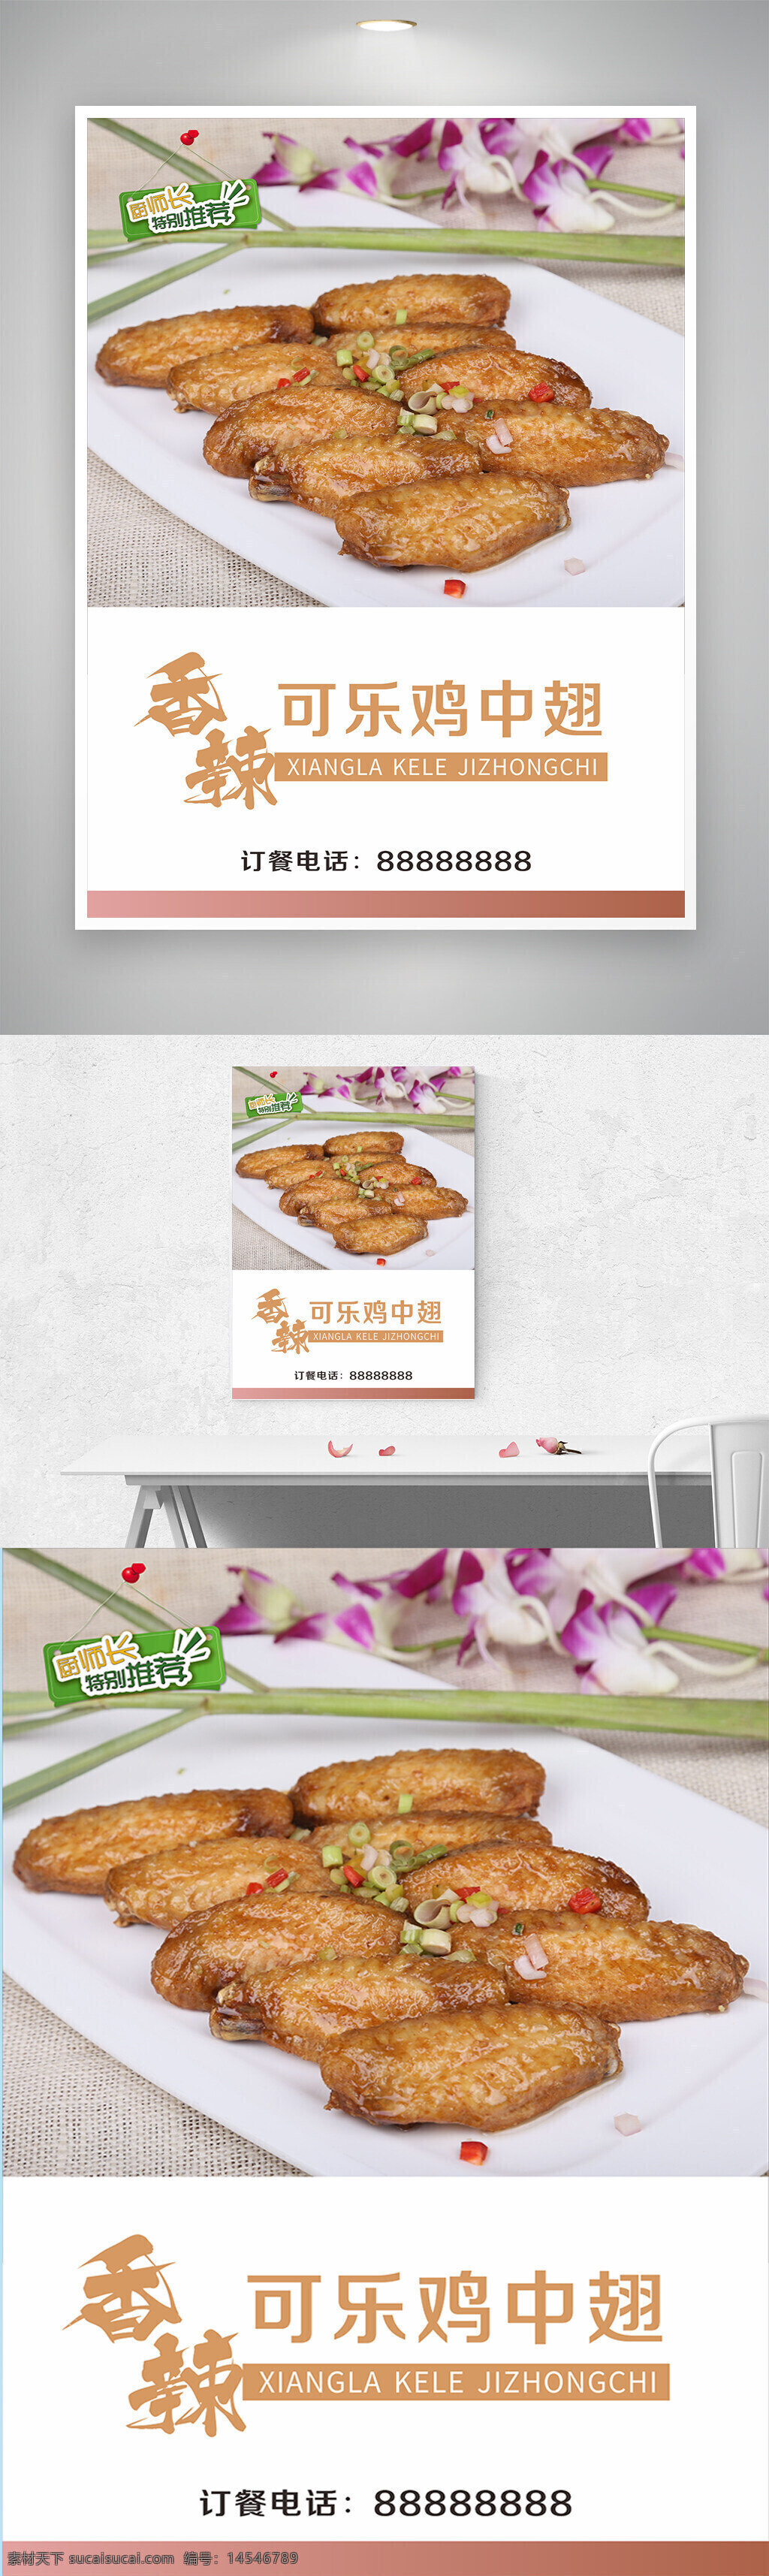 香辣可乐鸡翅海报 中国特色美食 鸡中翅 可乐 辣椒